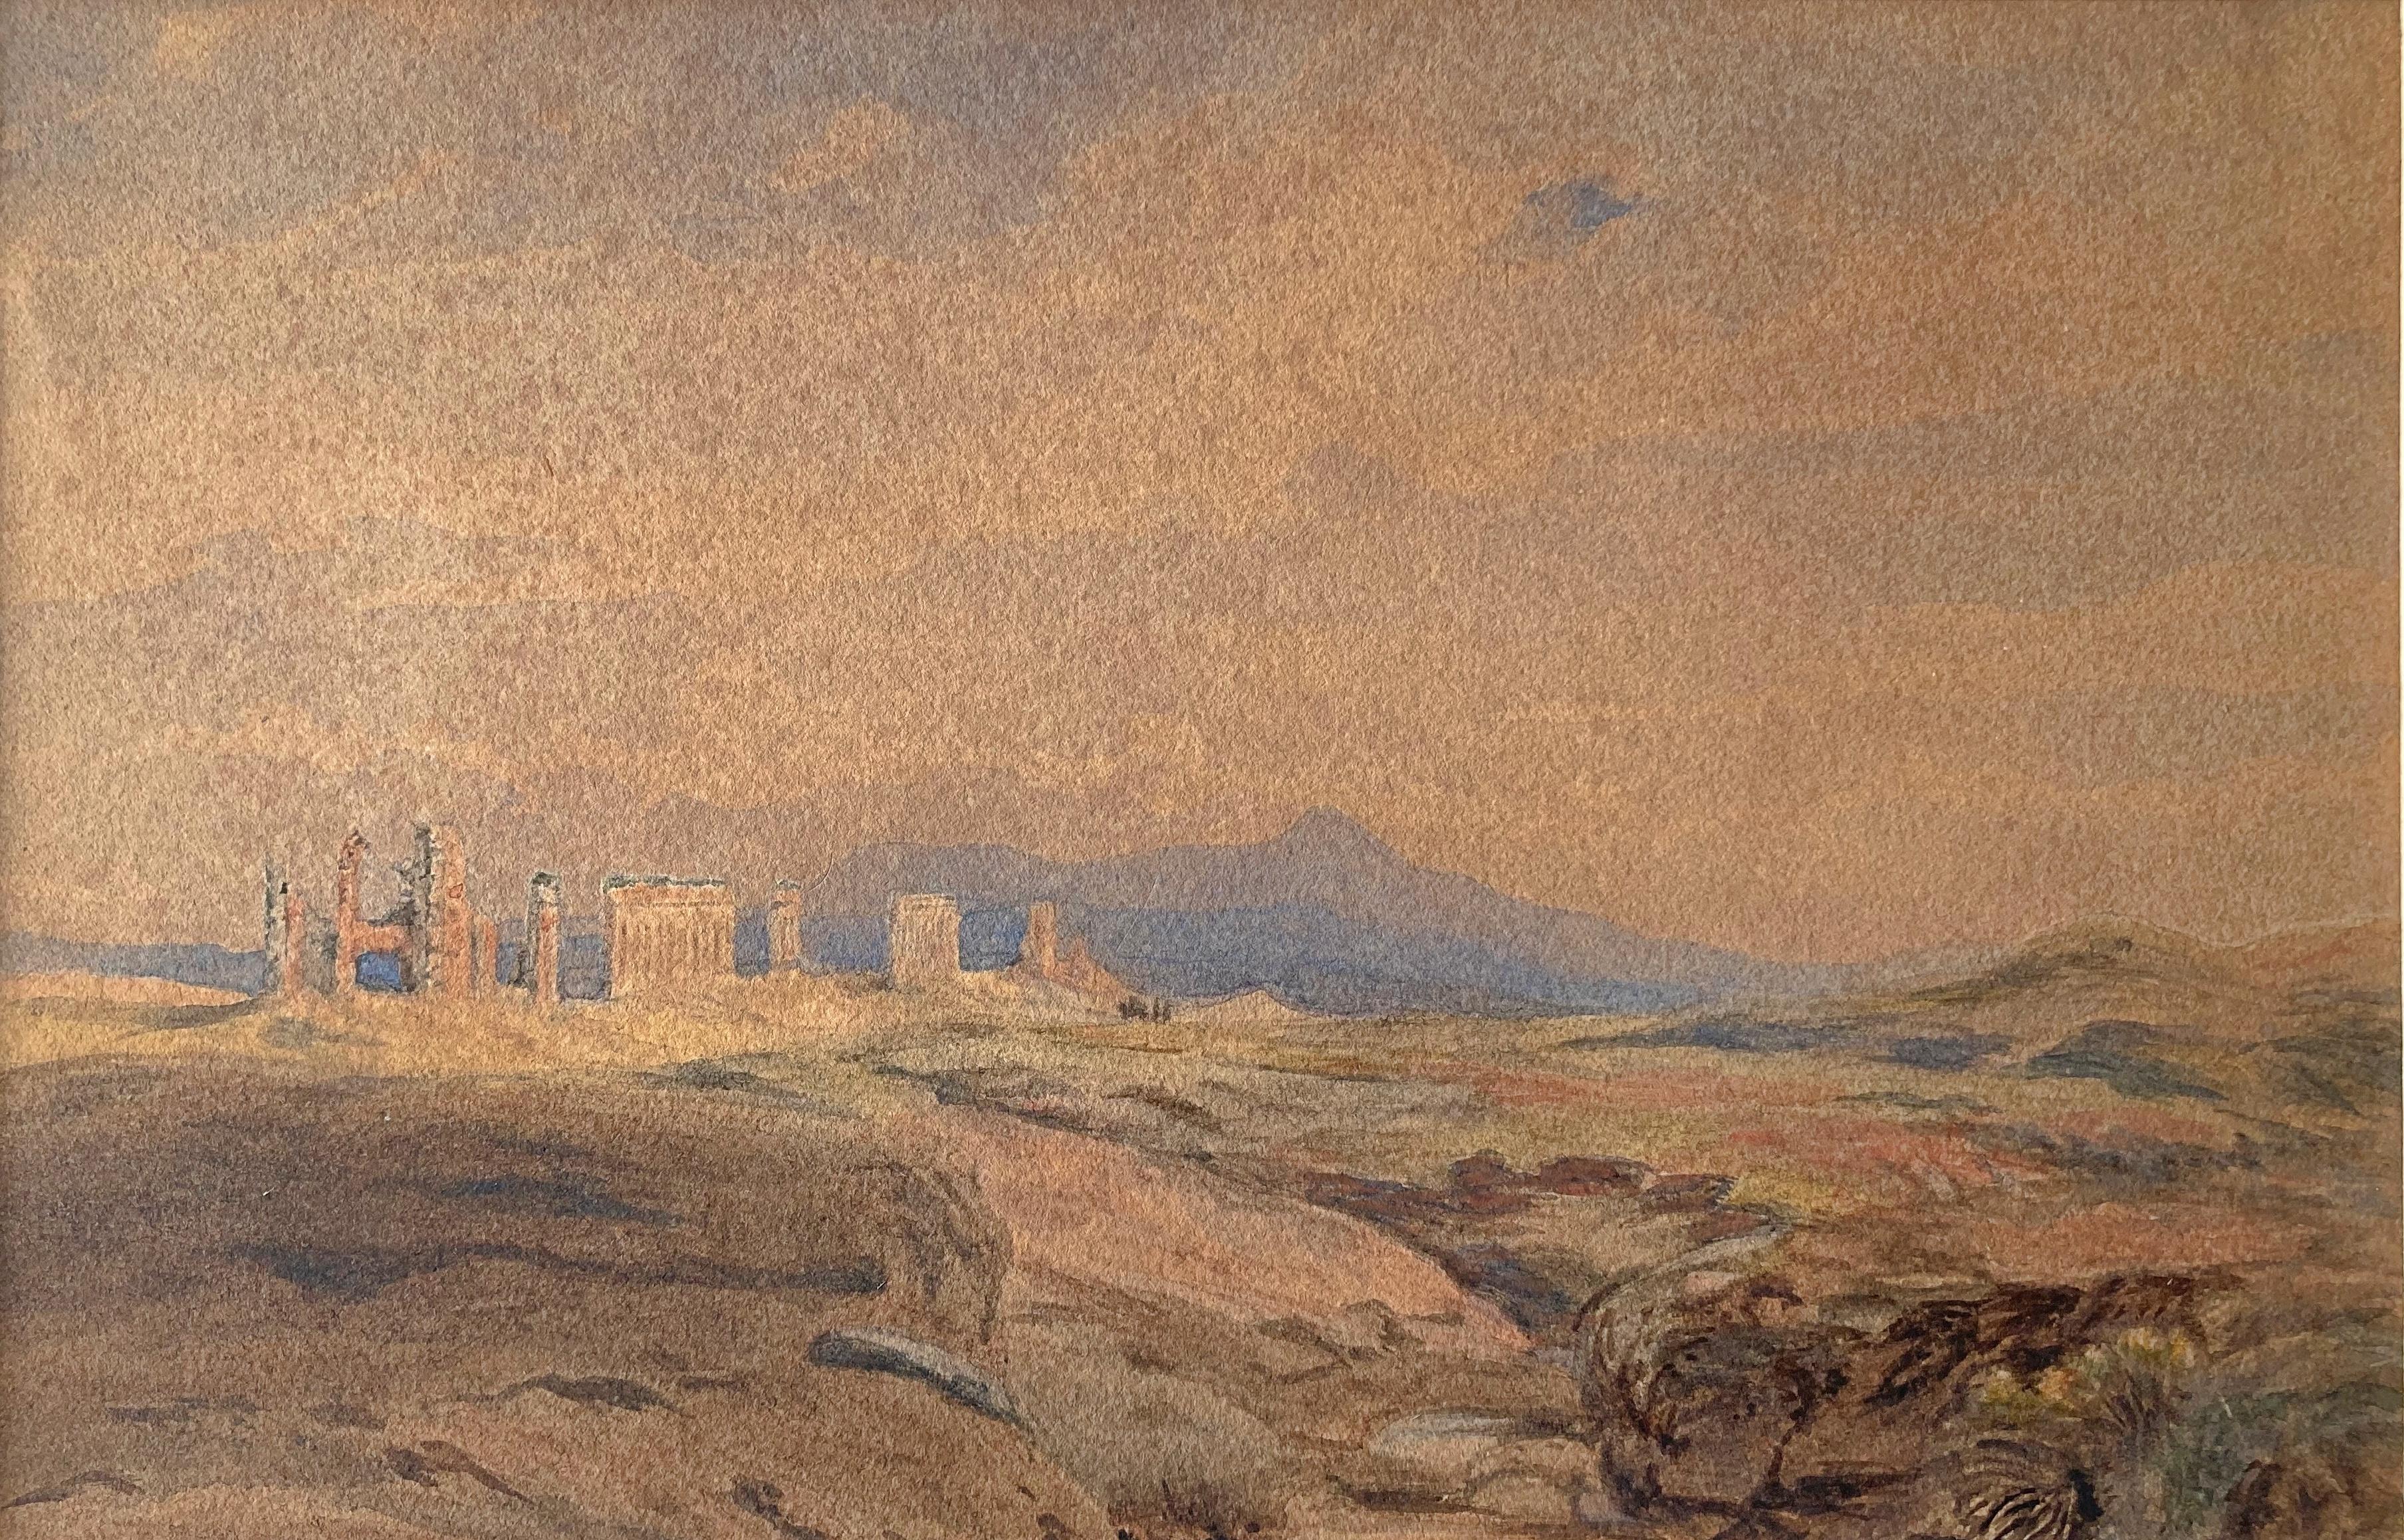 La plupart des comptes rendus sur les réalisations artistiques d'Edward Lear (1812-1888) partent du principe qu'il est plus connu comme auteur de vers absurdes que comme dessinateur topographique et peintre. Son art est alors considéré de manière